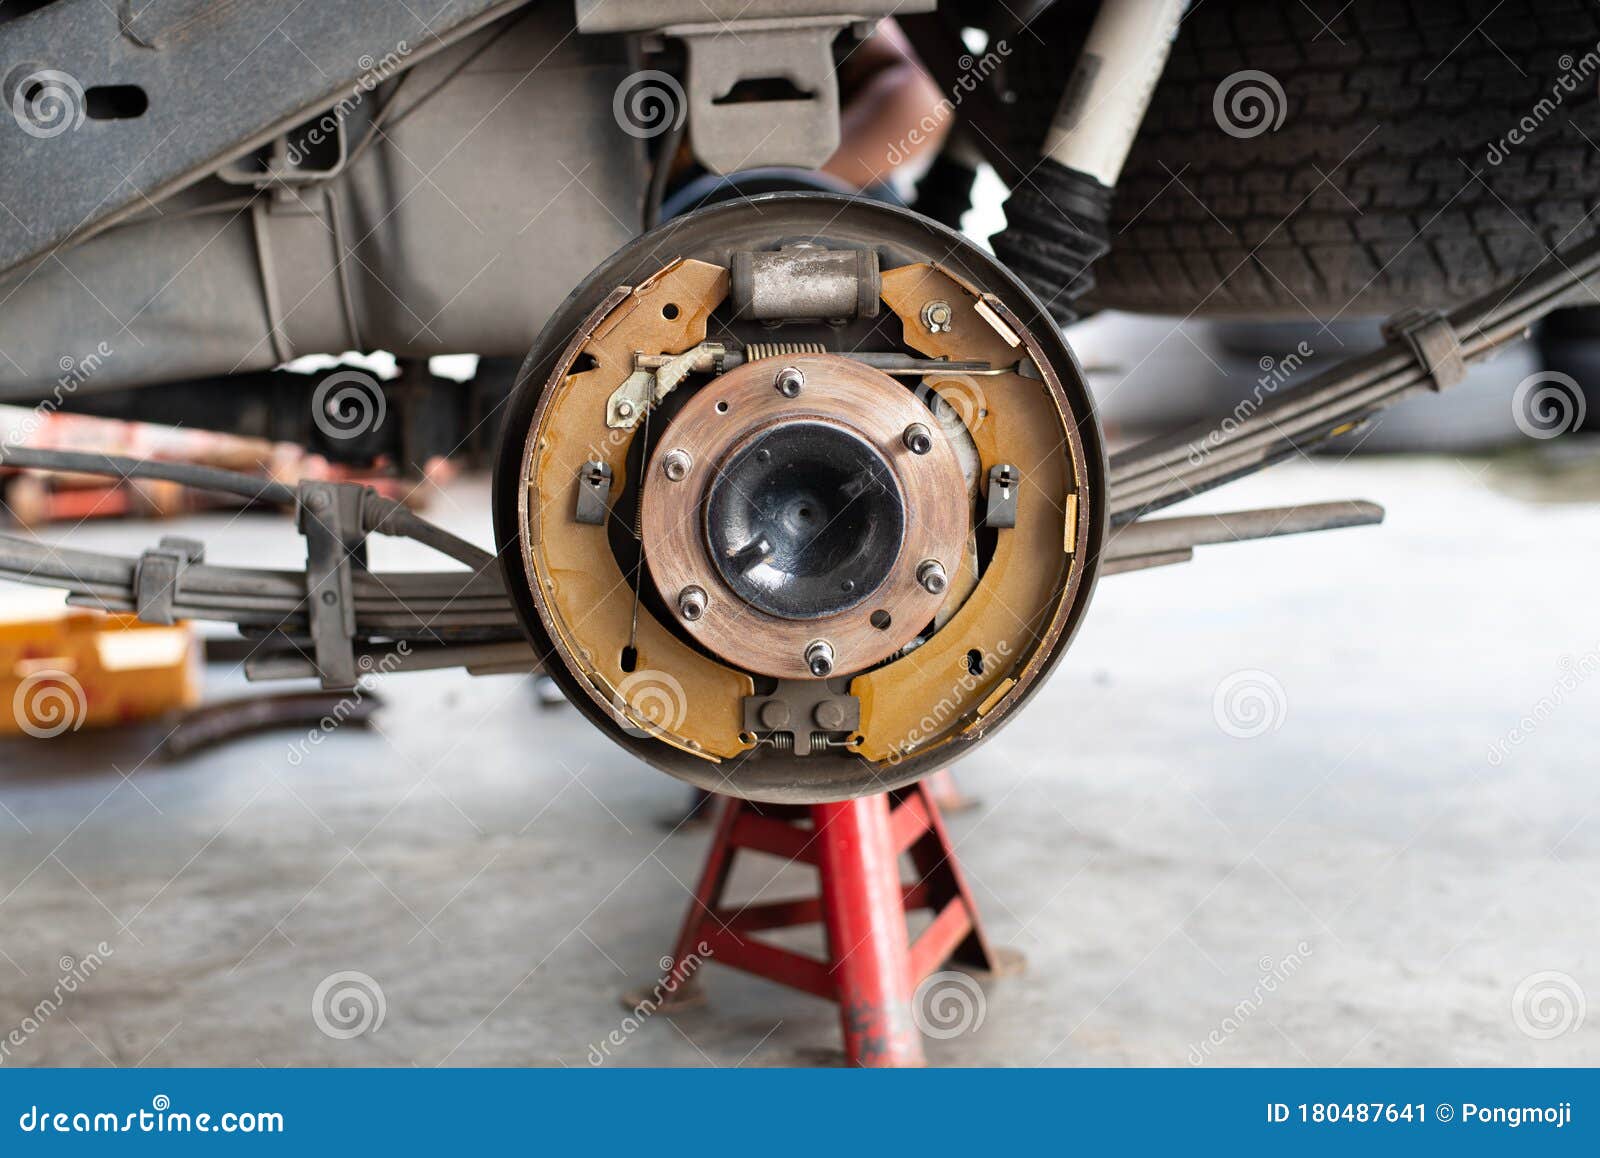 drum-brake-and-asbestos-brake-pads-at-car-garage-stock-image-image-of